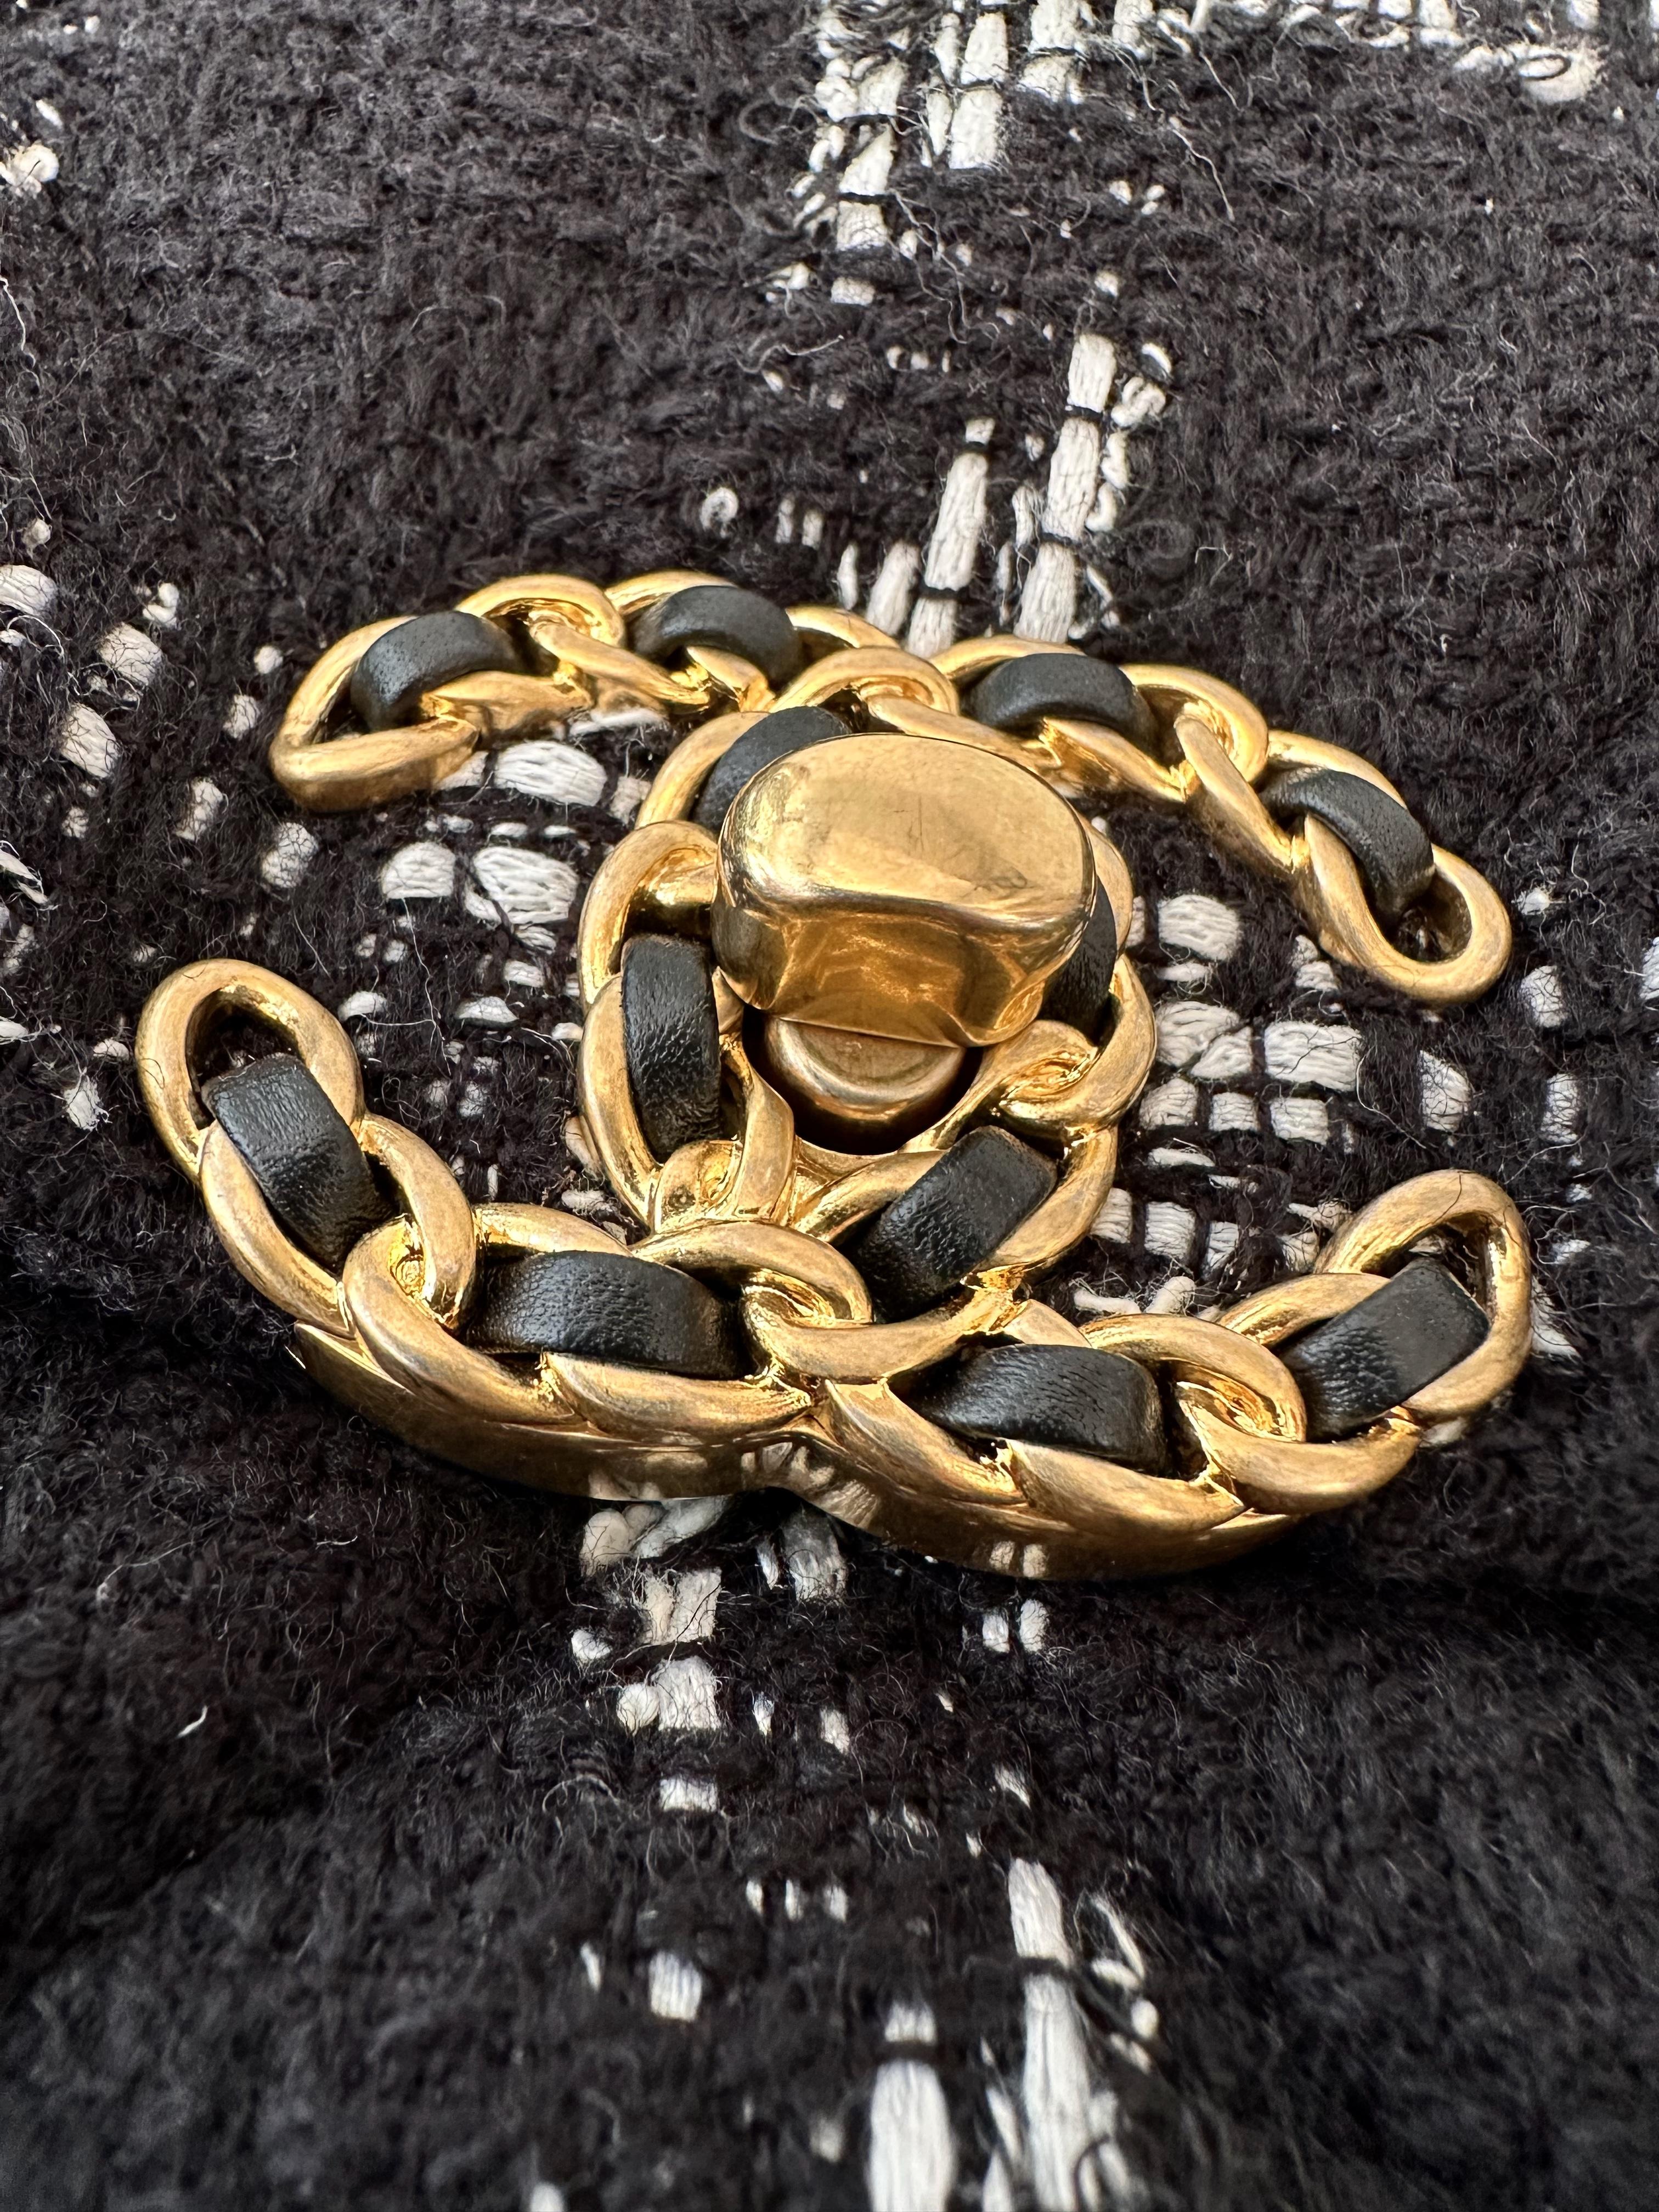 Diese große Chanel 19 Klappentasche aus zweiter Hand ist aus schwarzem gestepptem Tweed mit einem rautenförmigen weißen Muster gefertigt. 
Sie verfügt über einen 10 cm langen goldfarbenen Kettengriff und einen 47 cm langen goldfarbenen,